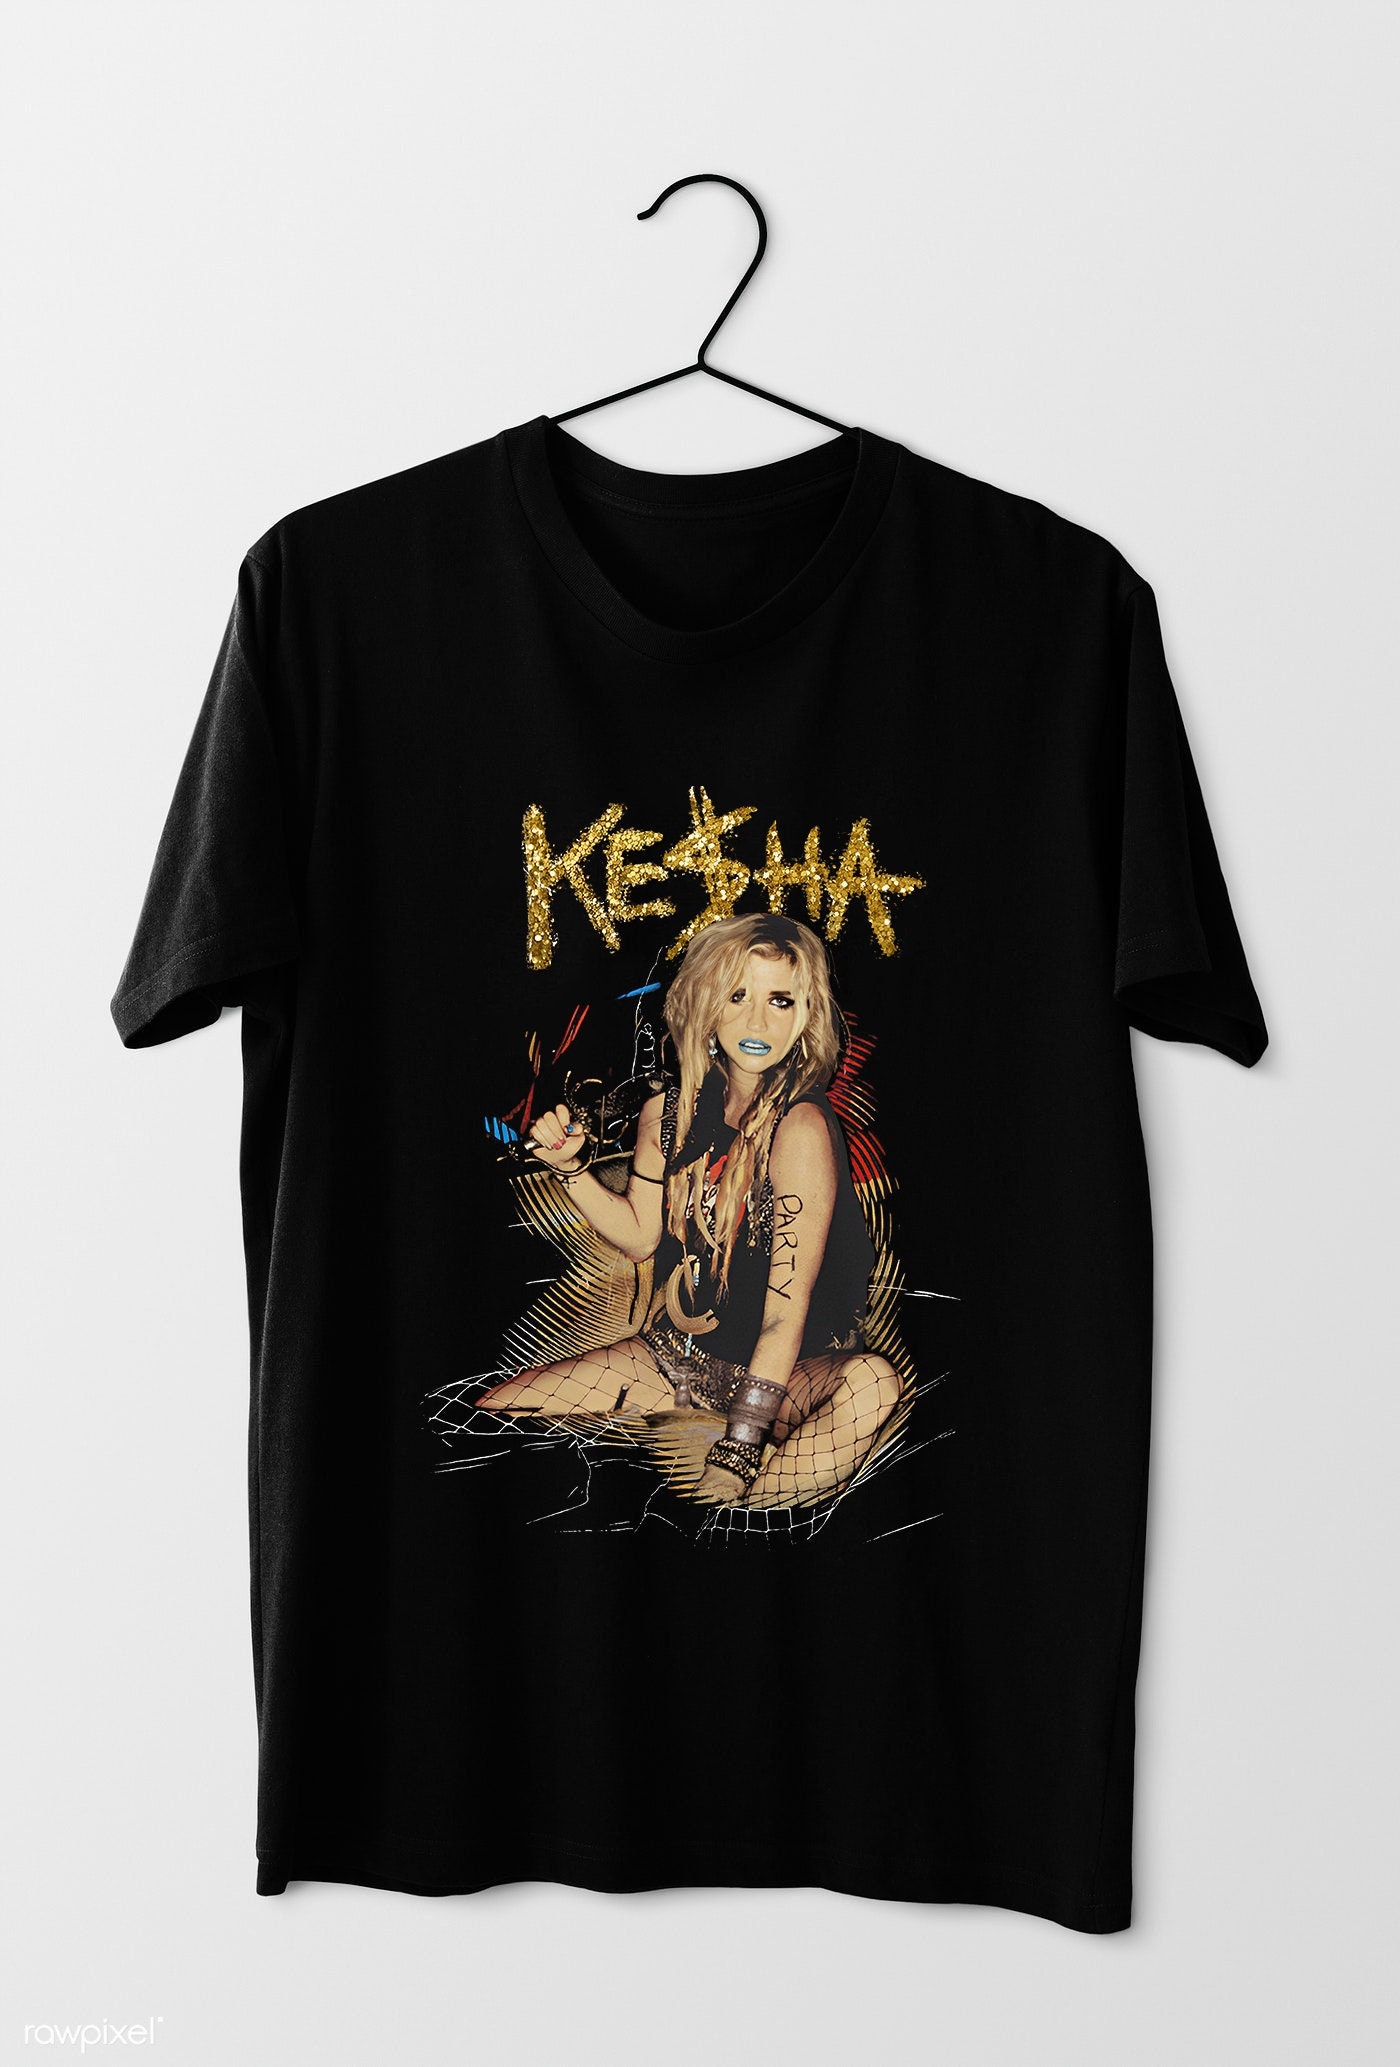 Discover Kesha Shirt, Kesha Shirt